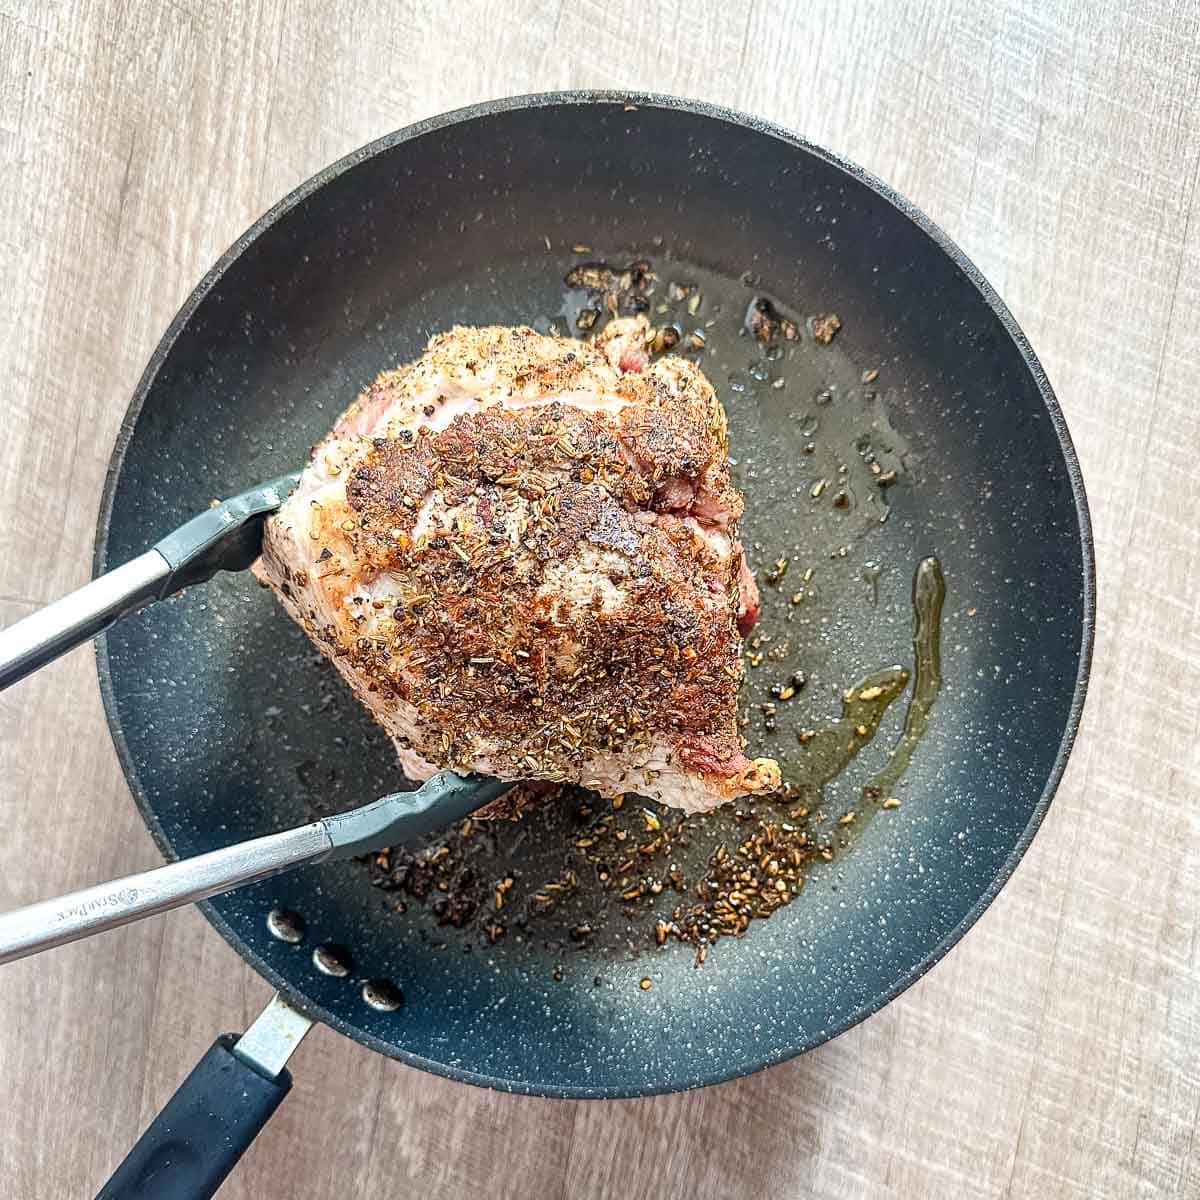 A pork roast is browned in a frying pan.